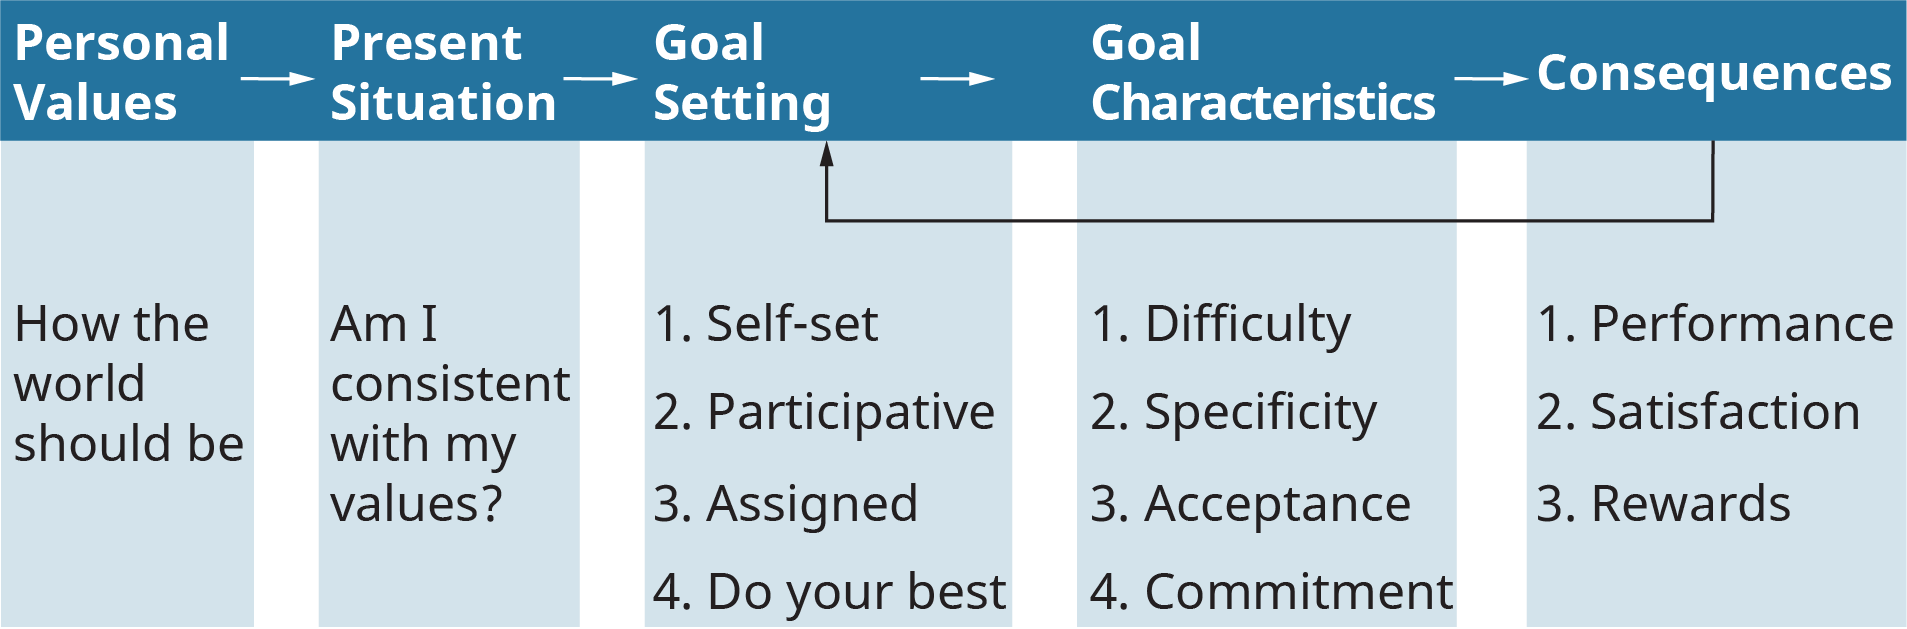 يوضح الرسم التوضيحي عملية تحديد الأهداف الناجحة من خلال نموذج تحديد الأهداف الأساسي.